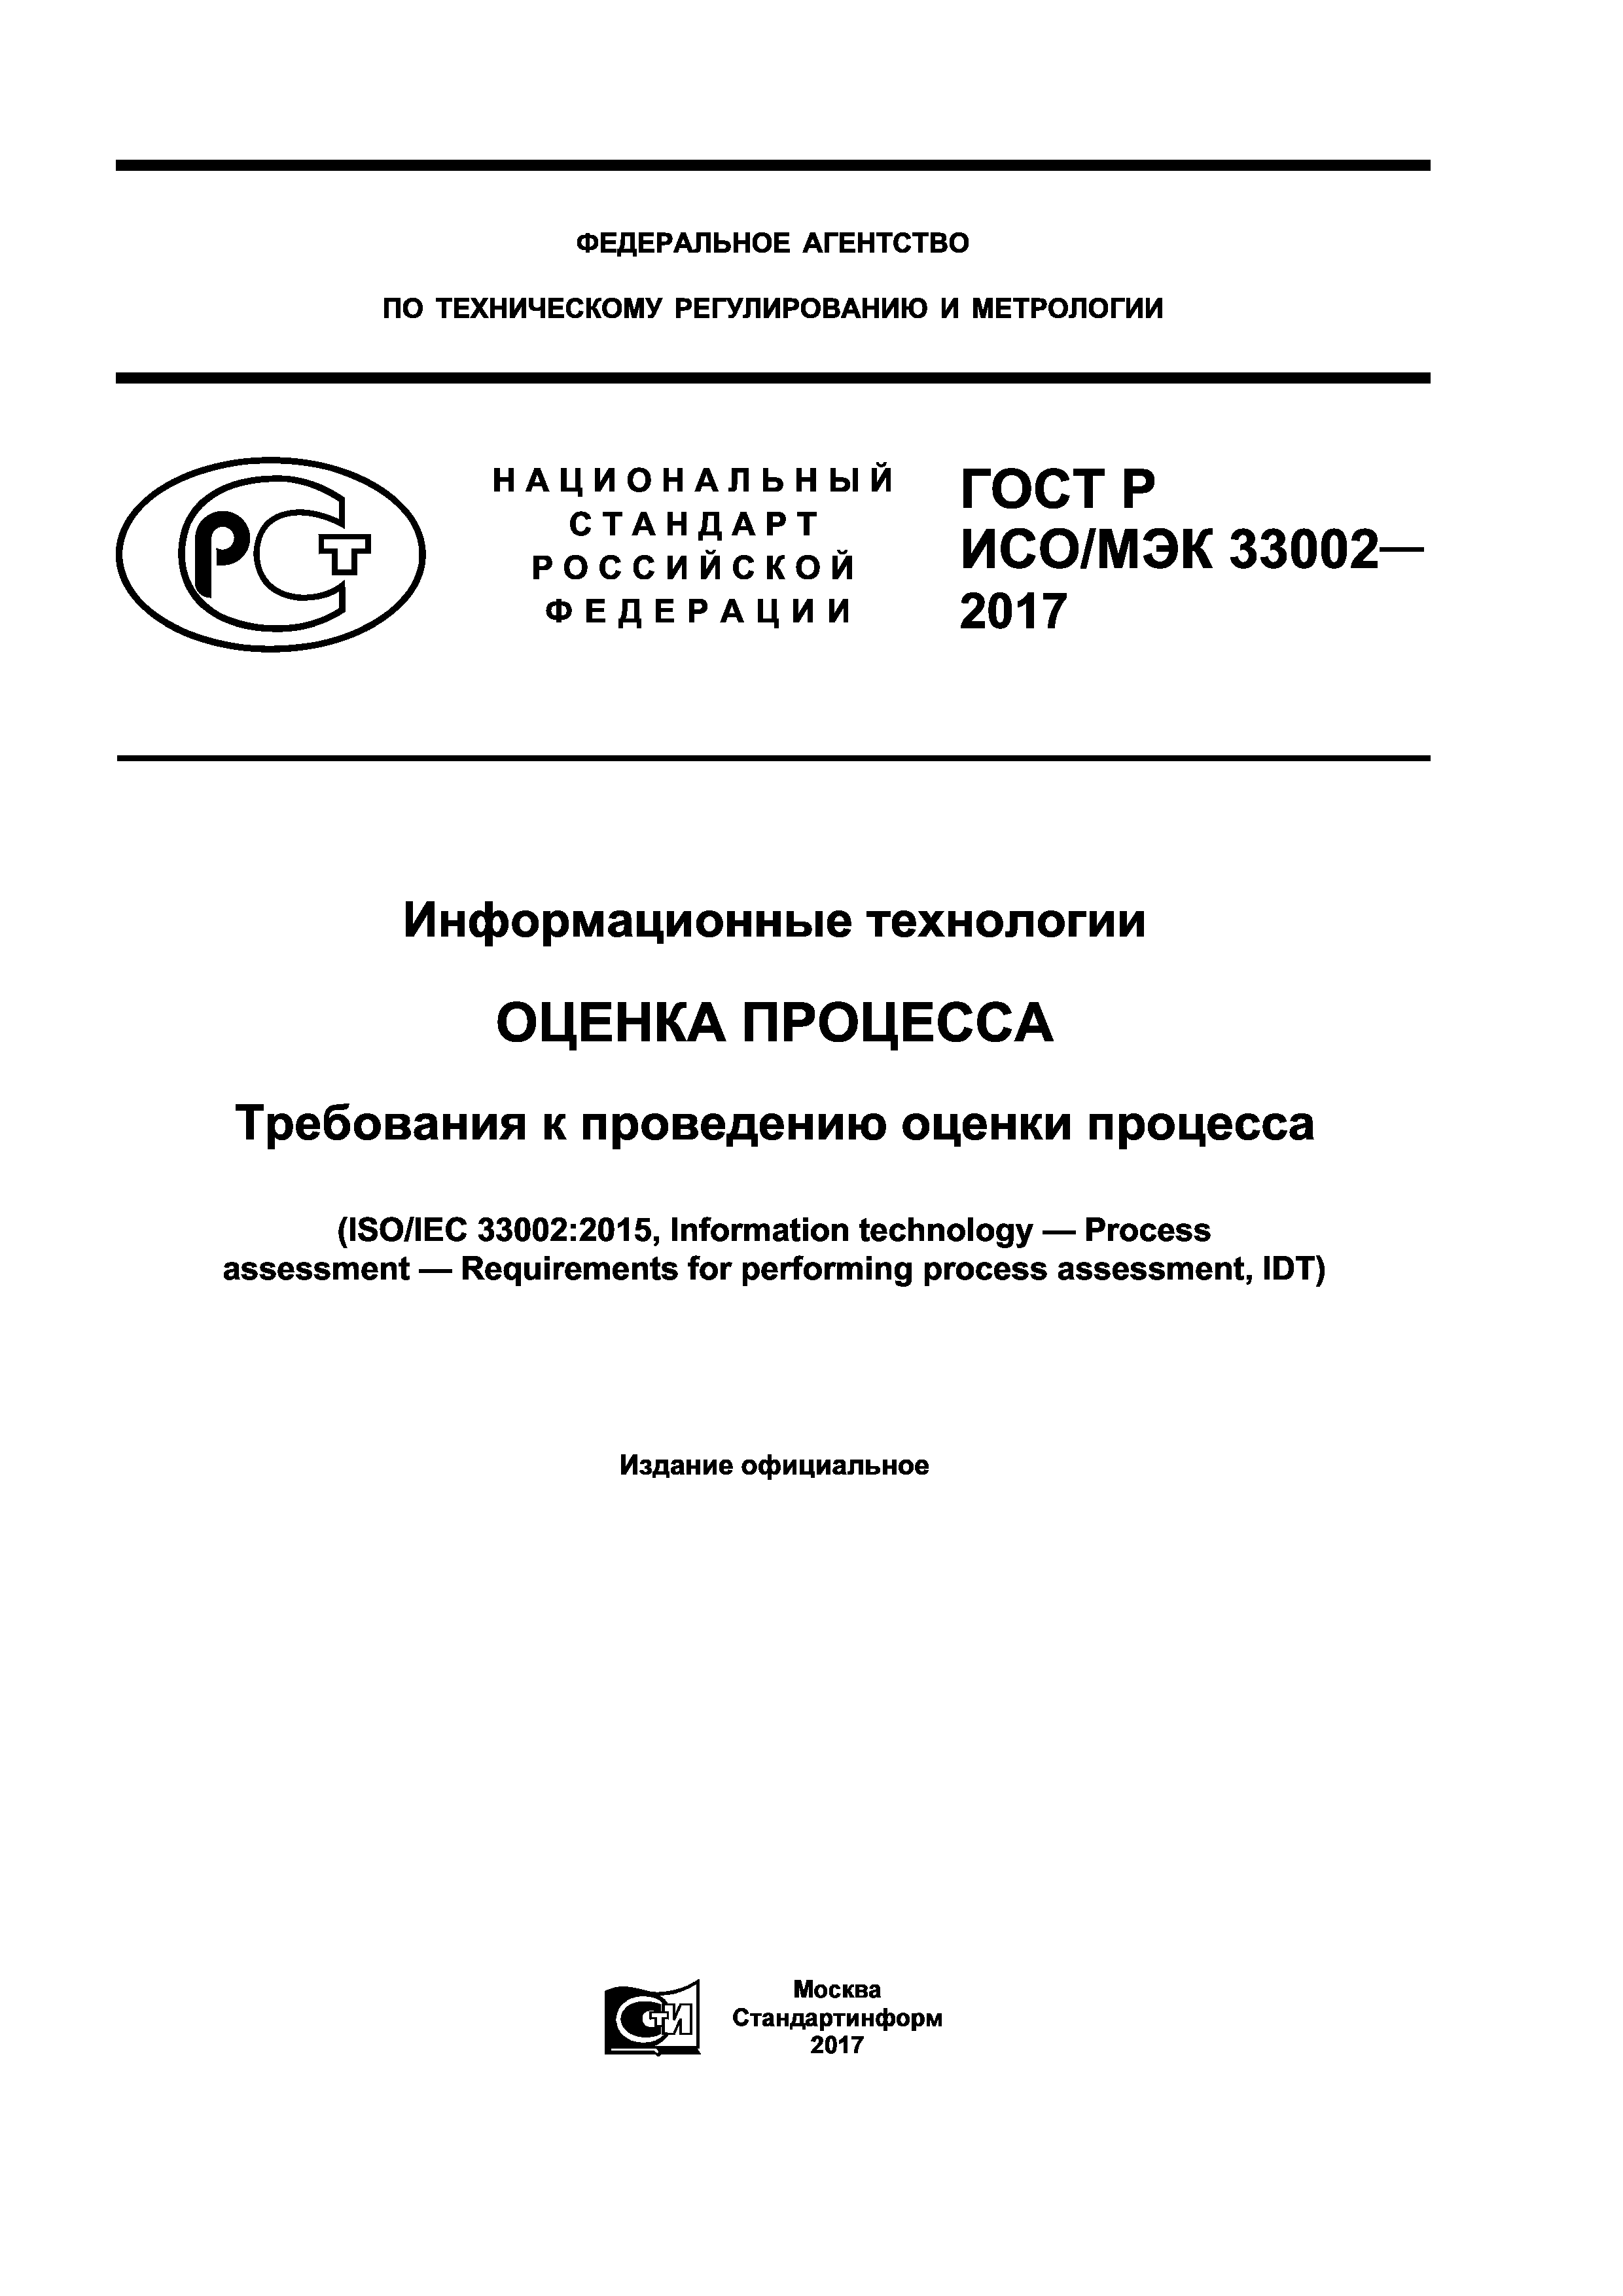 ГОСТ Р ИСО/МЭК 33002-2017